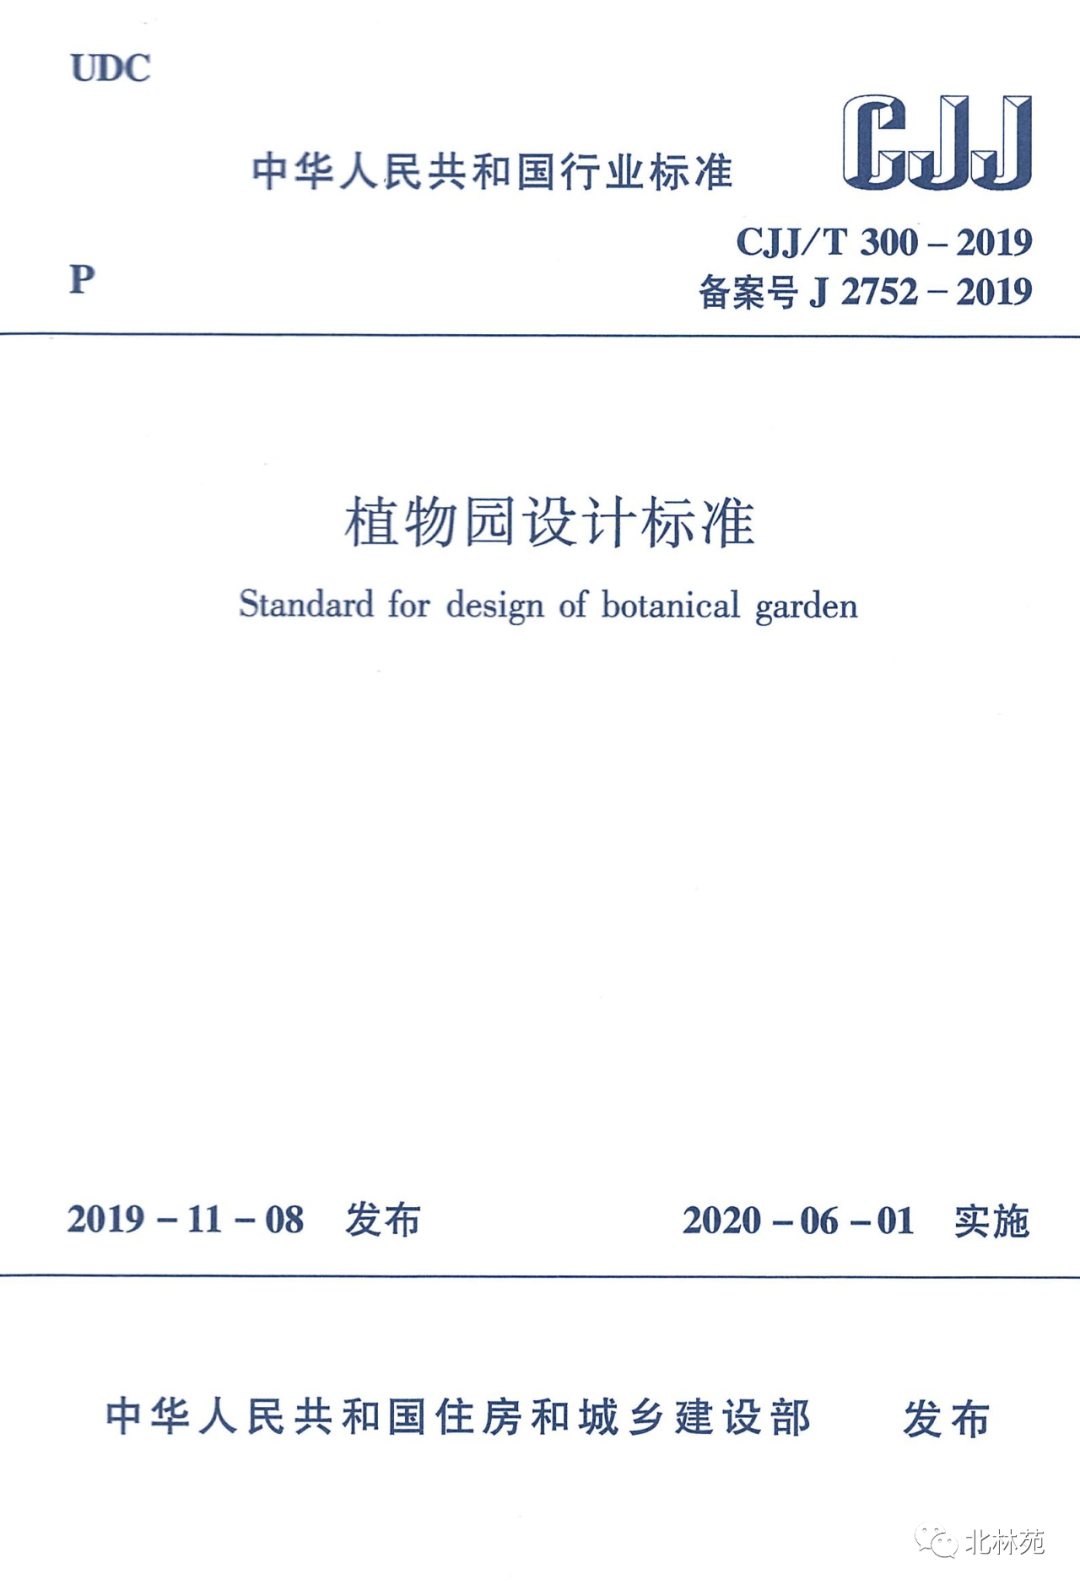 北林苑参编的国家行业标准《植物园设计标准》正式施行/